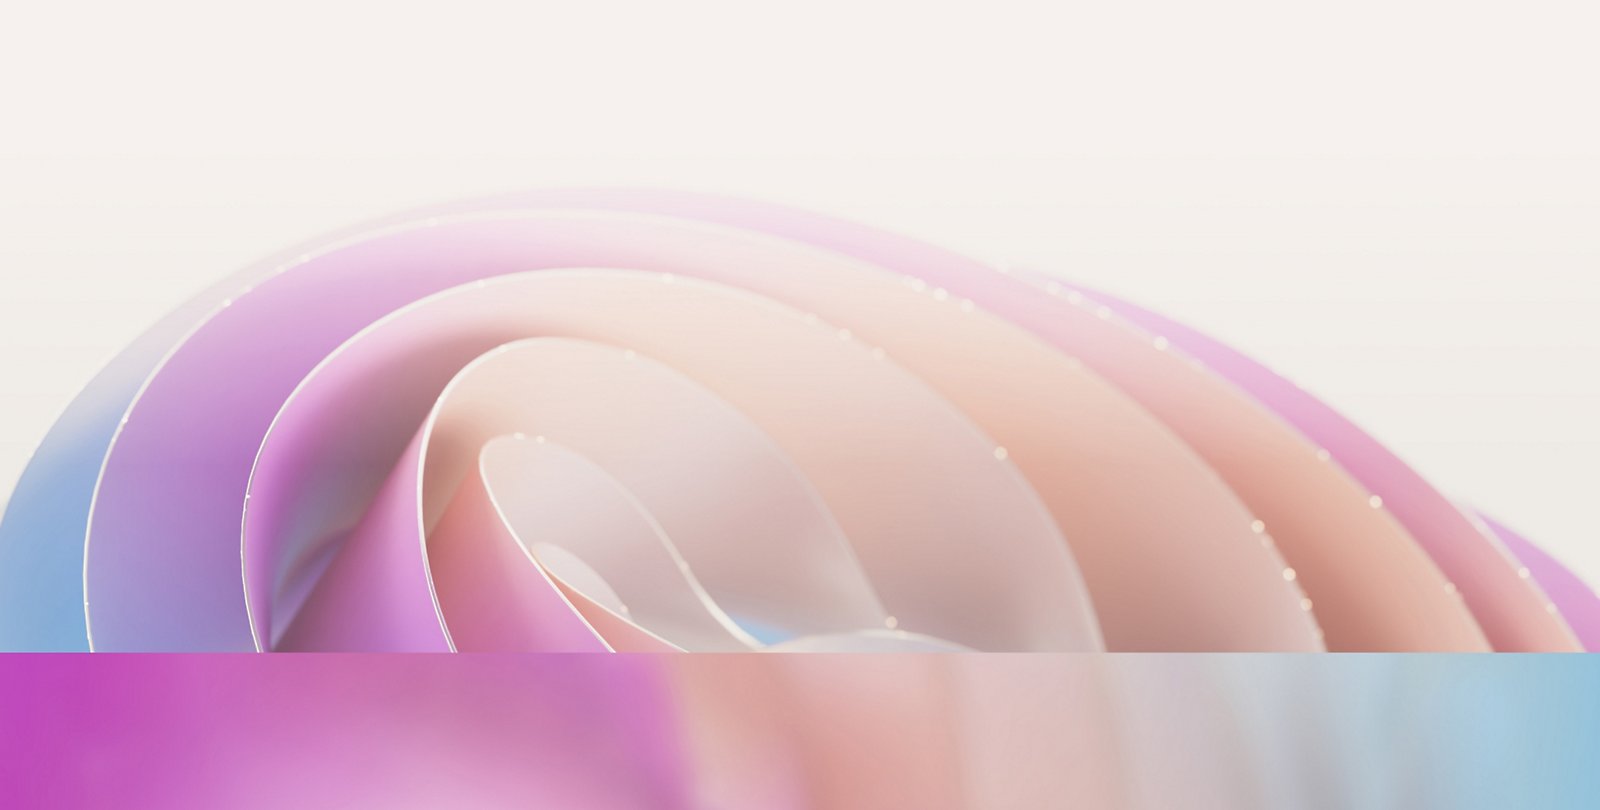 Абстрактное изображение с мягкими перекрывающимися пастельными кривыми оттенков розового, фиолетового и синего, создающими нежный волнообразный узор.